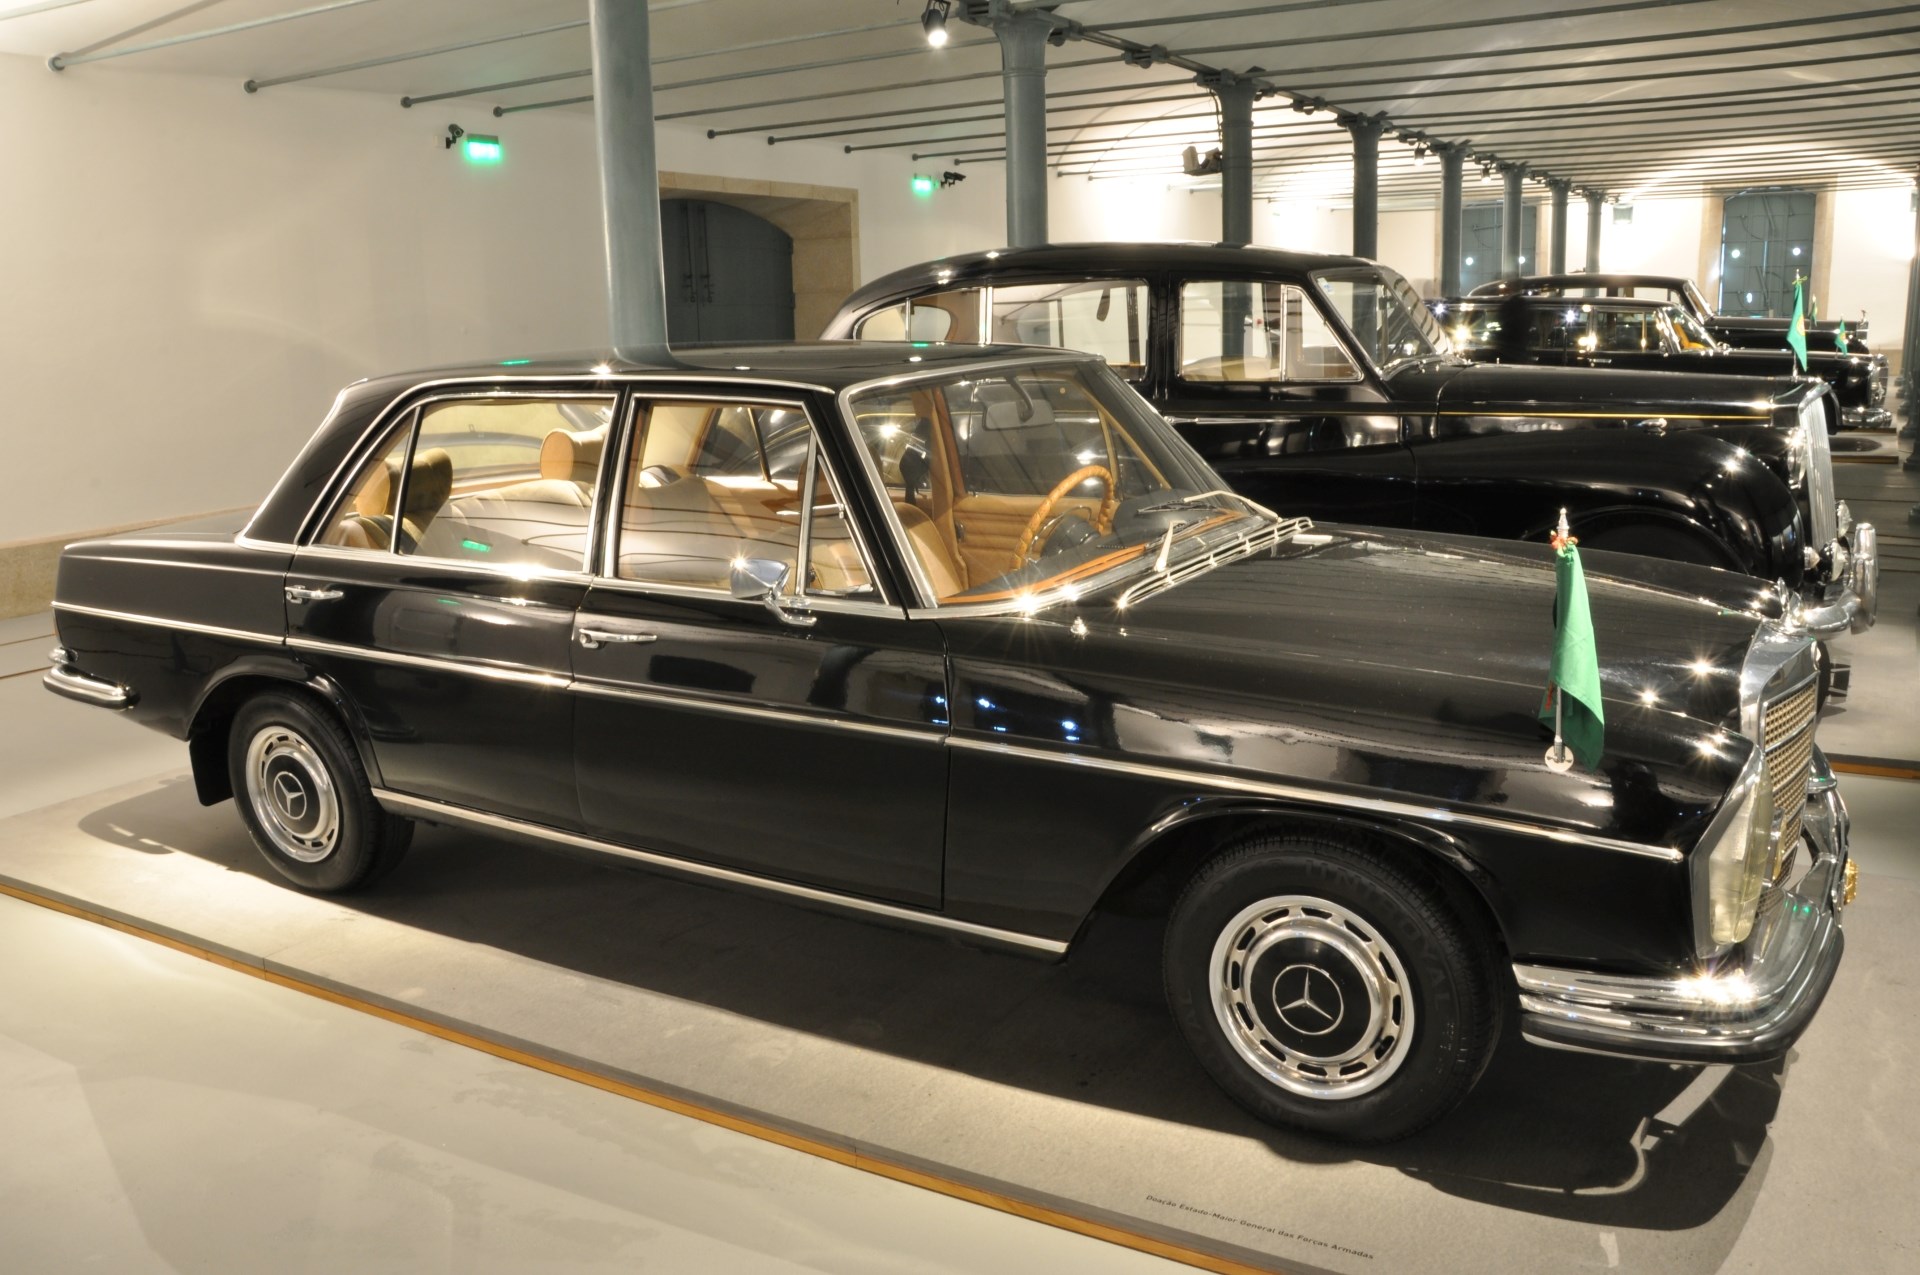 Alguns dos automóveis em exposição no Museu dos Transportes e Comunicações do Porto. Em primeiro plano, um Mercedes-Benz 280 SEL.